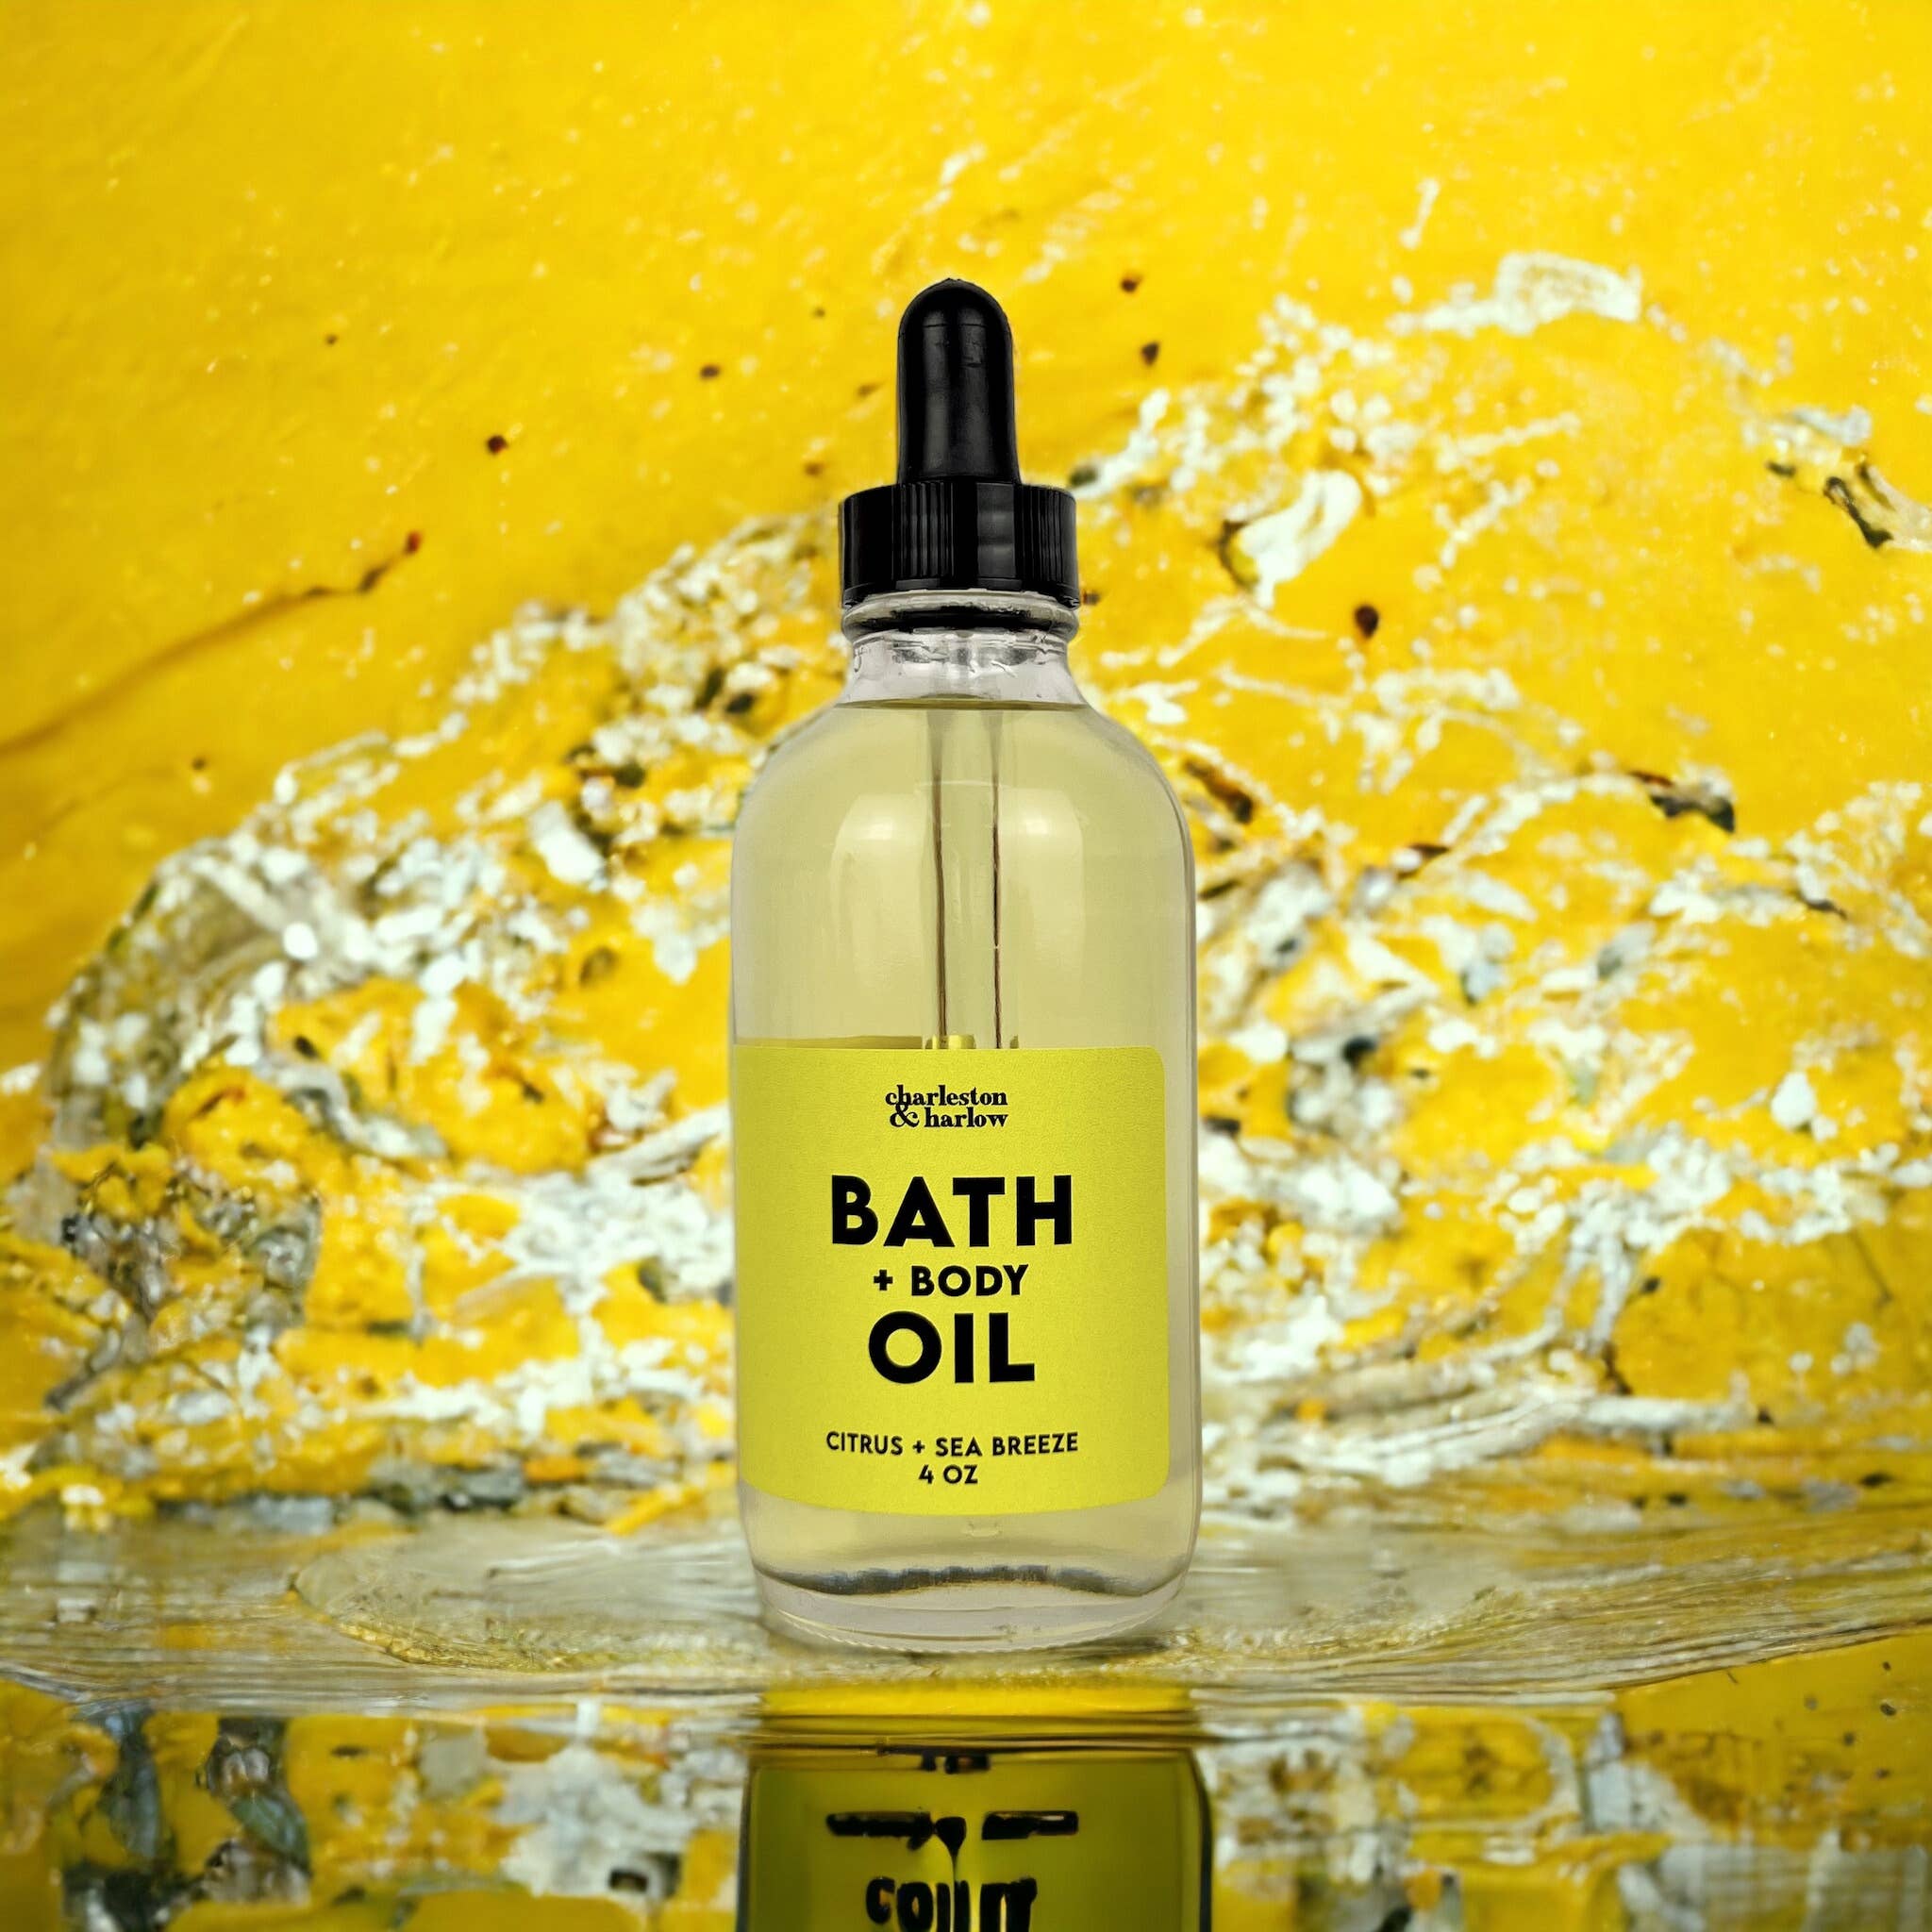 Bath + Body Oil - Citrus + Sea Breeze